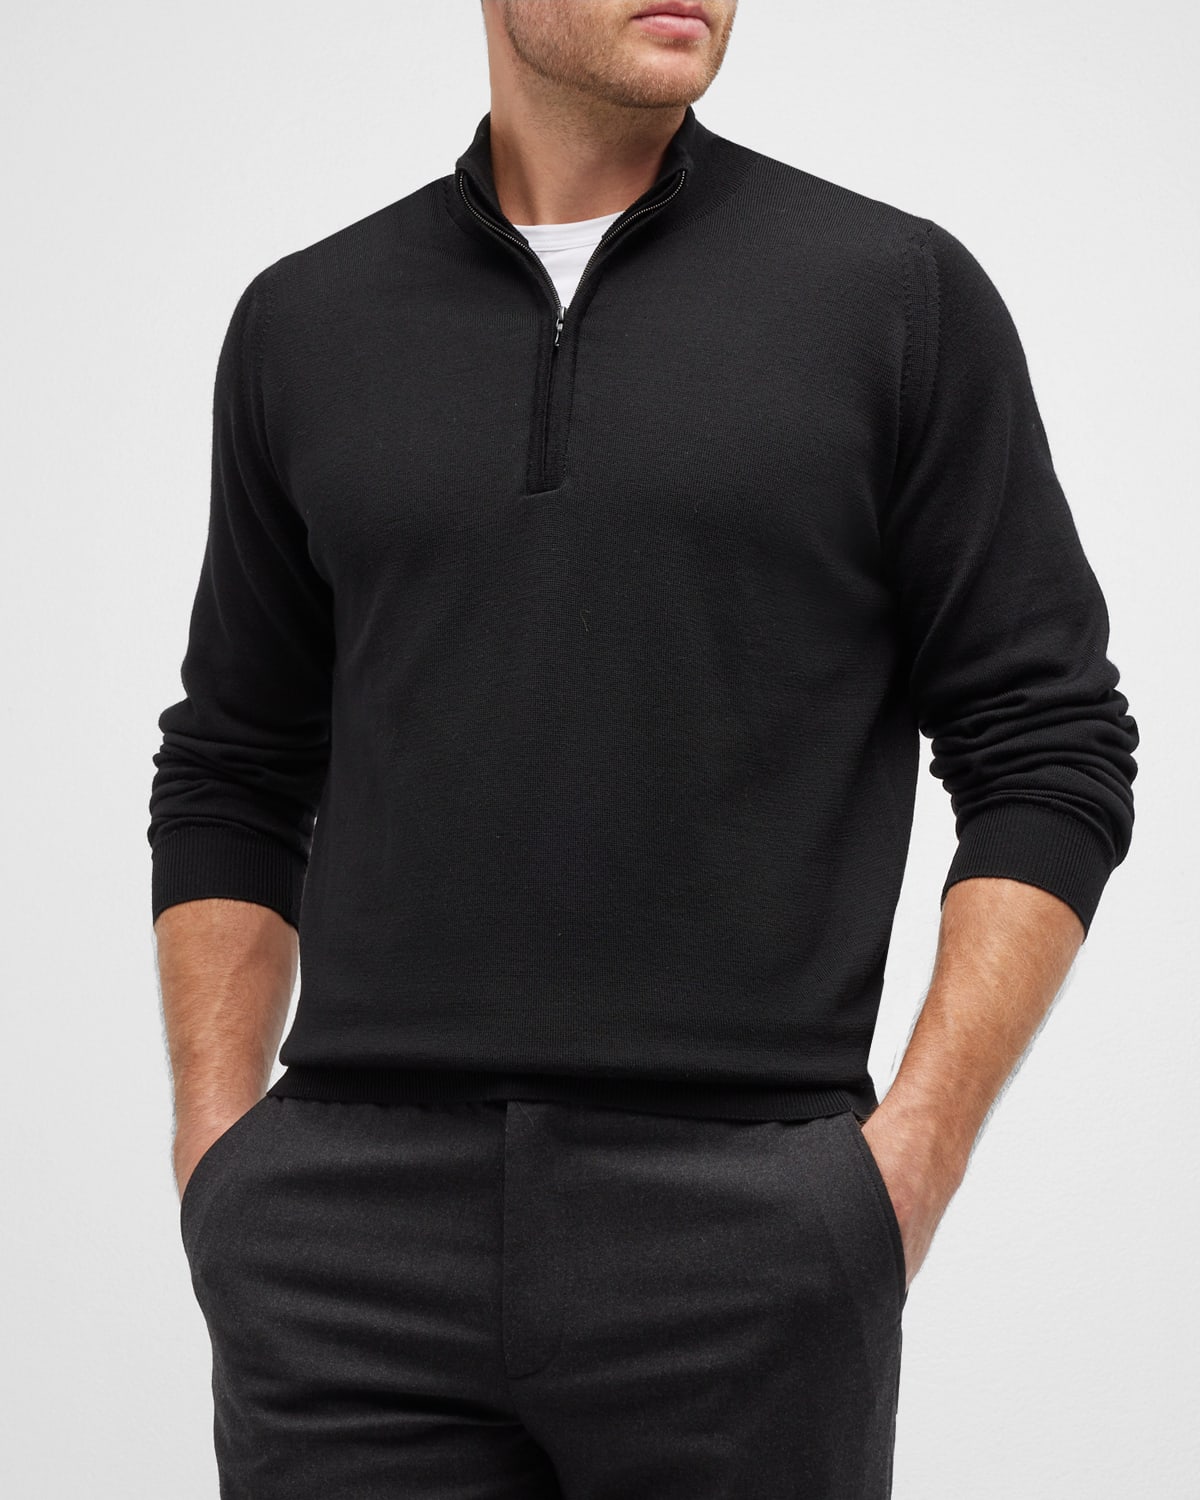 Men's Tapton Quarter-Zip Sweater